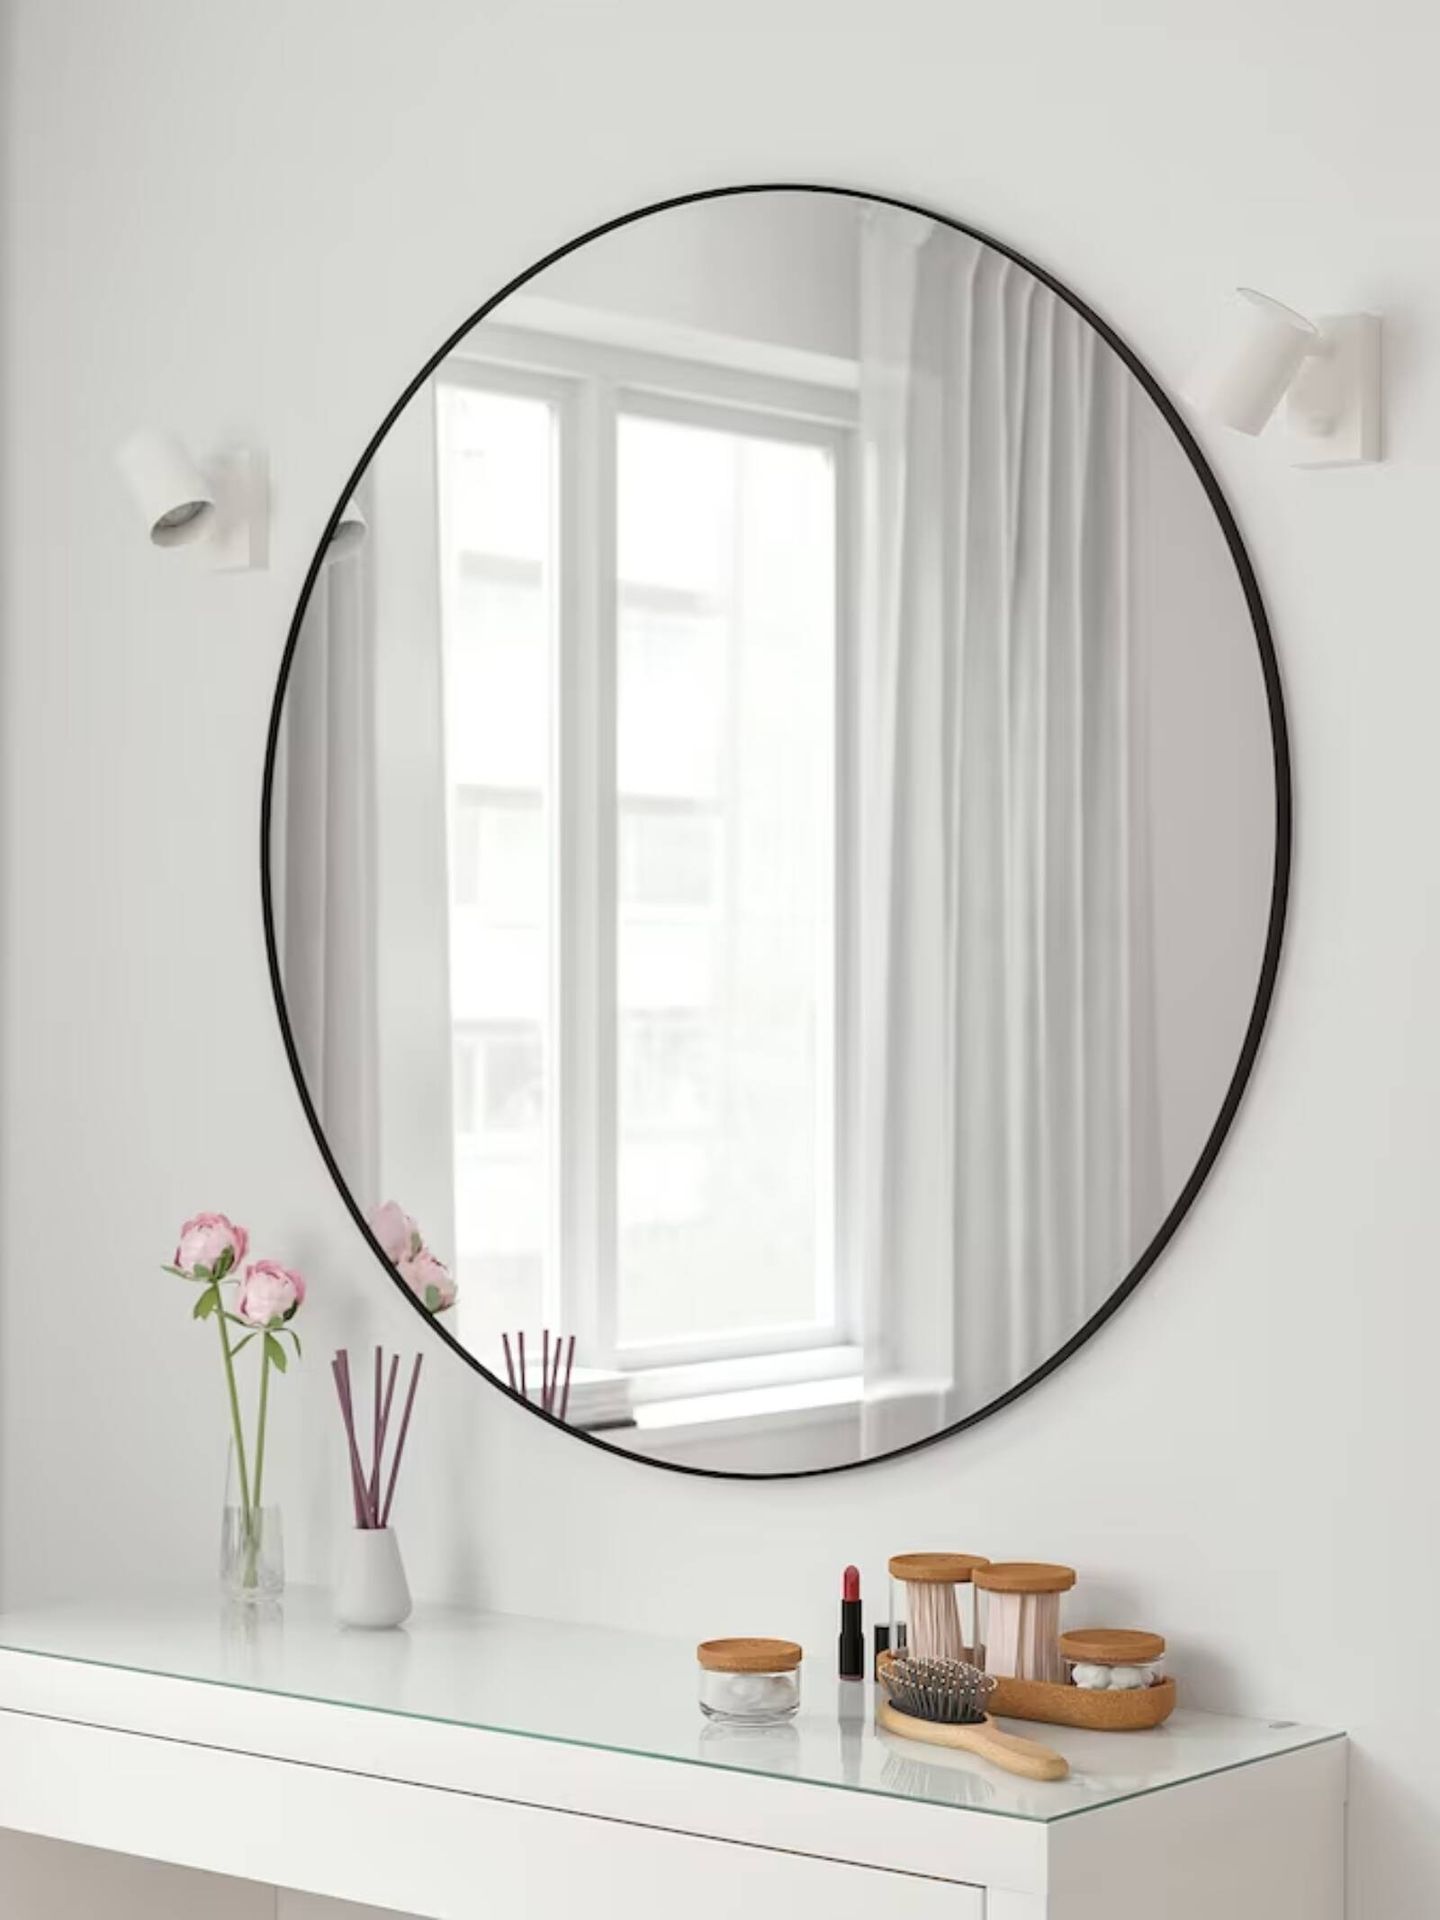 Un espejo redondo es ideal para estas estancias. (Cortesía/Ikea)